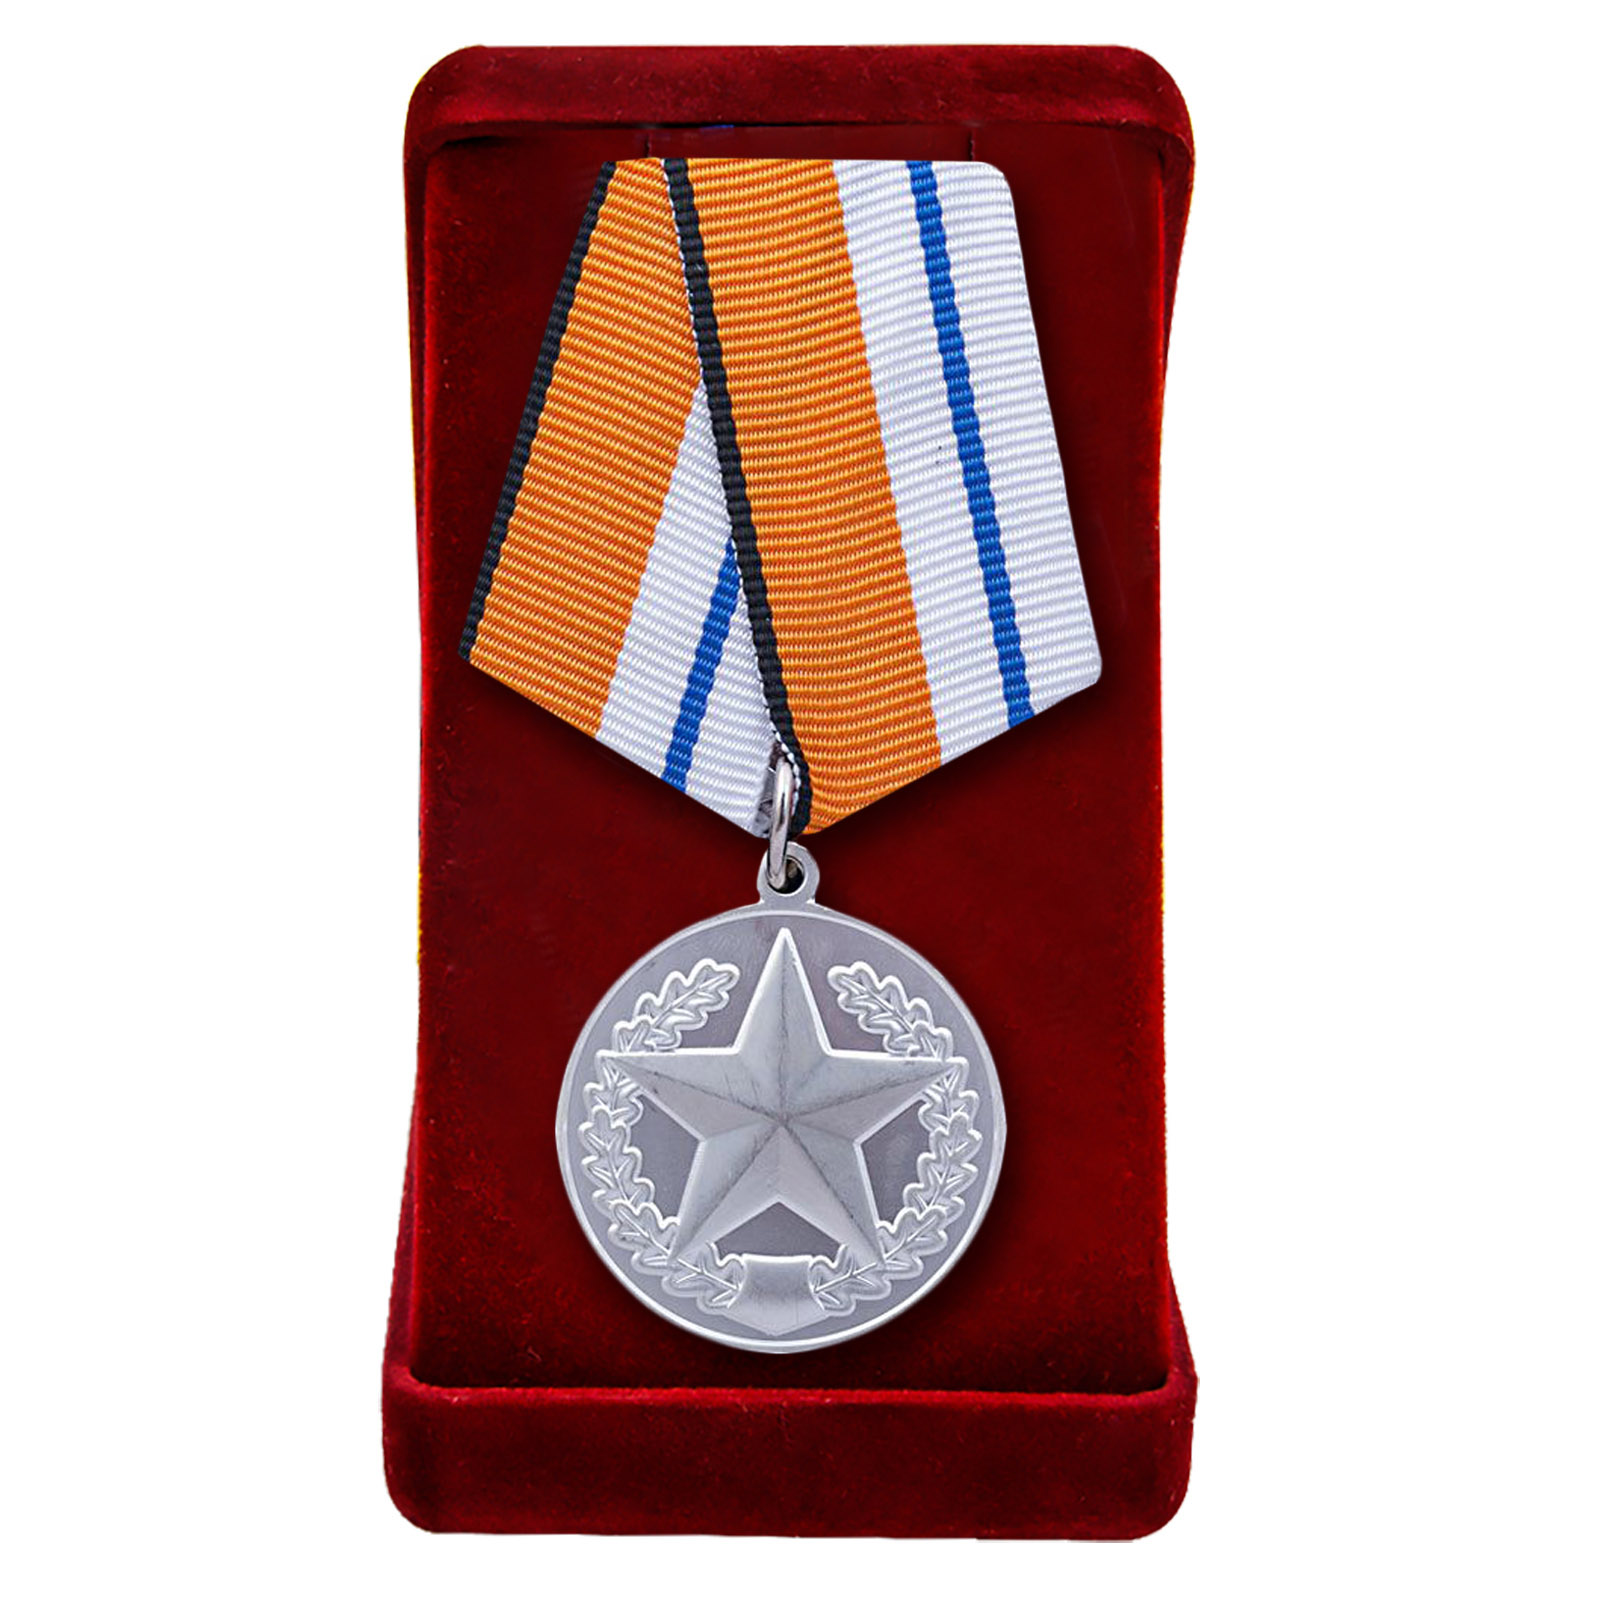 Медаль "За отличие в соревнованиях" 2 степени (Министерства Обороны)